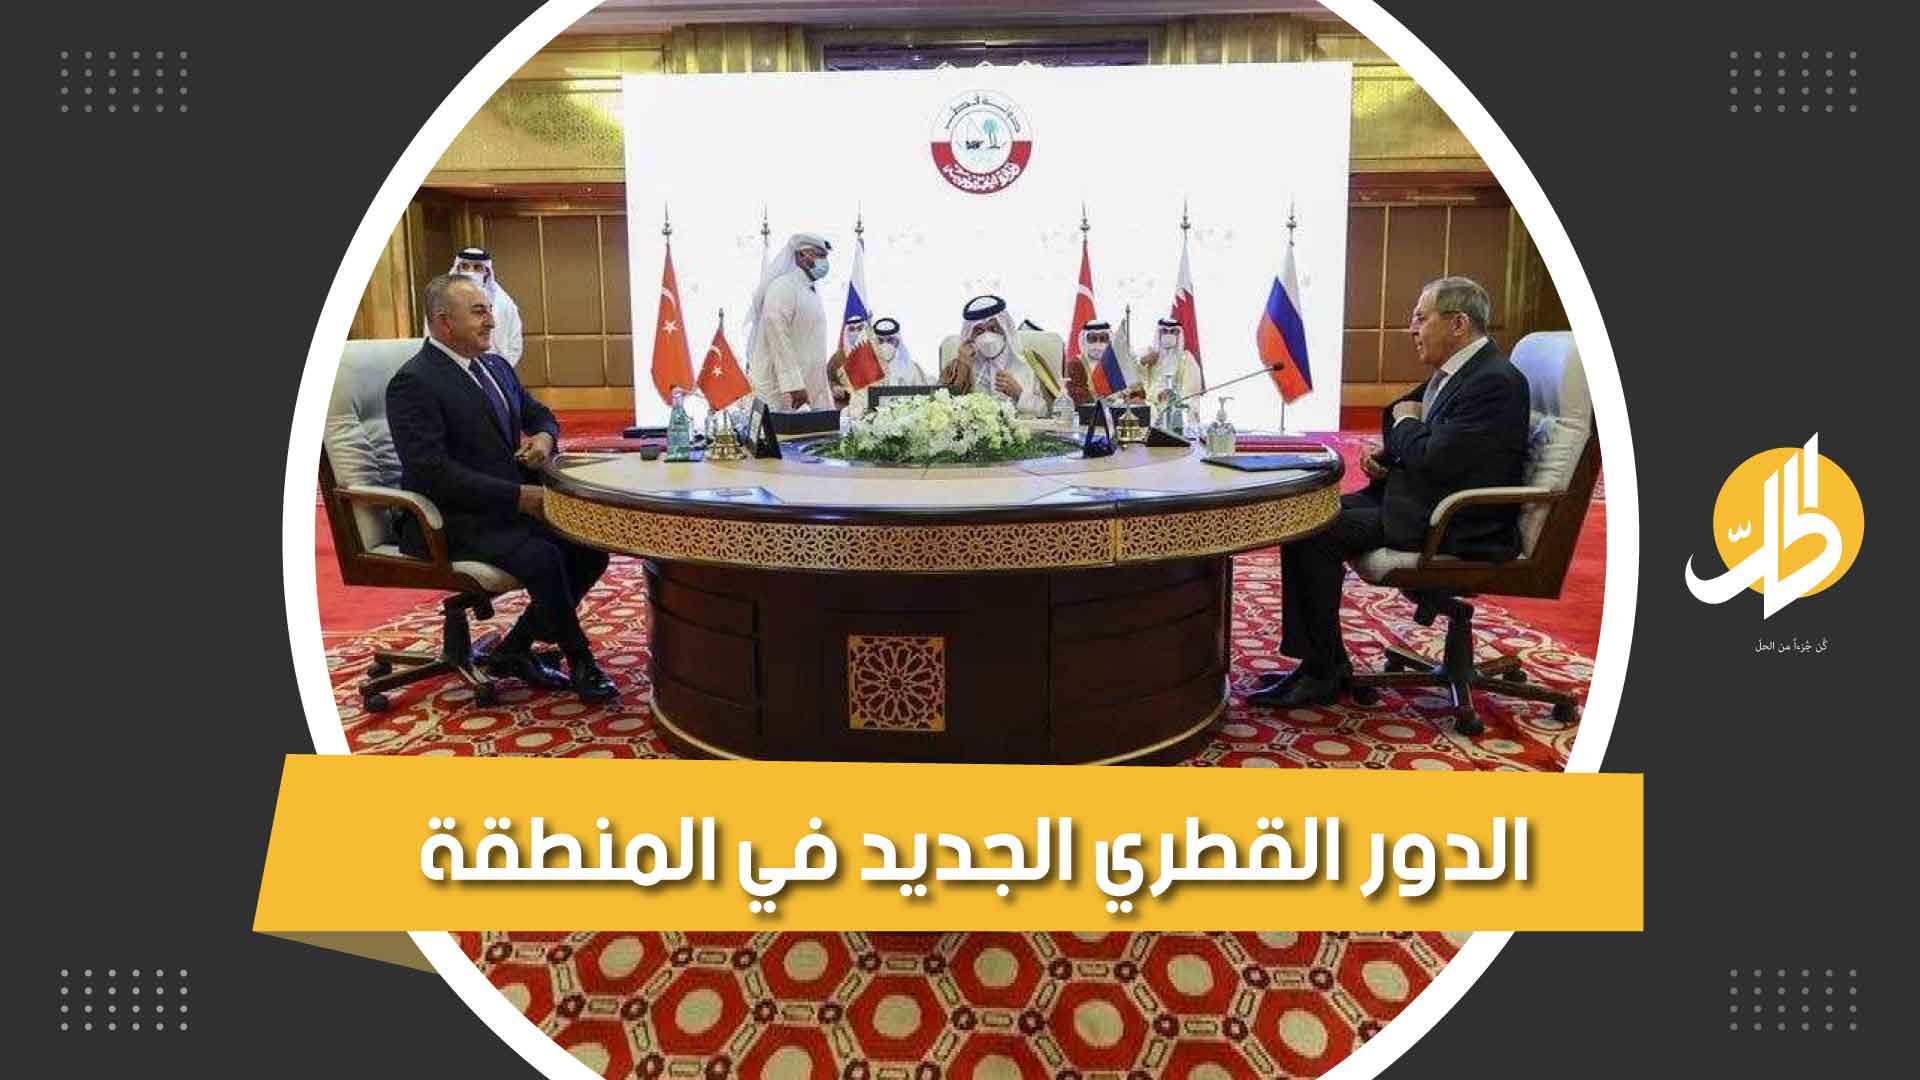 قطر الجديدة.. هذه سياستها في المنطقة وملفات العراق وسوريا